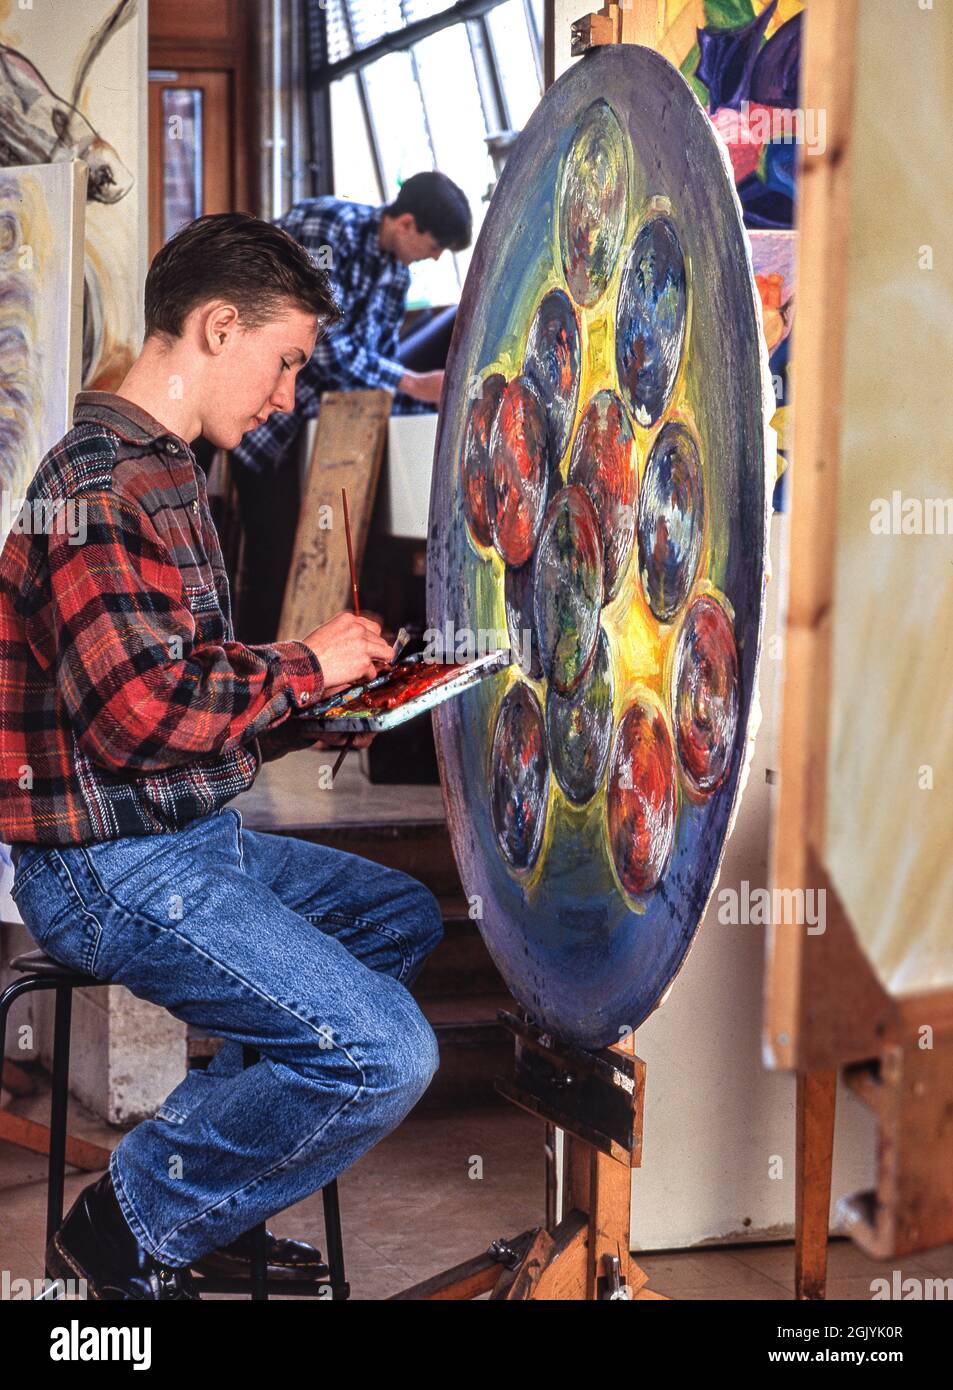 Classe d'arte con allievo studentesco di 15 anni di scuola superiore secondaria superiore che mette i ritocchi finali alla sua espressiva arte circolare moderna dipinta in olii Foto Stock